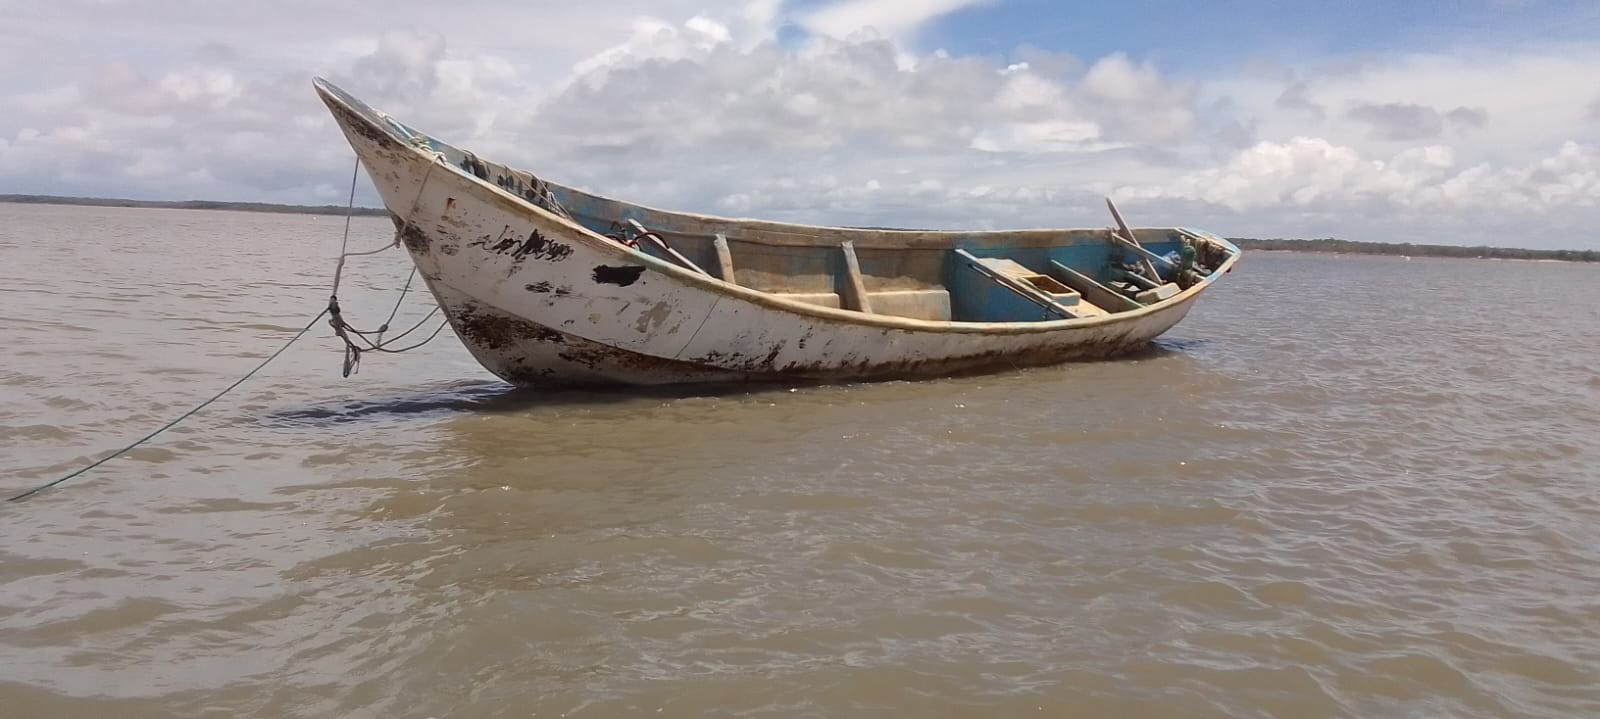 Barco com corpos encontrado no Pará tinha espaço para motor de pequeno porte, diz Marinha